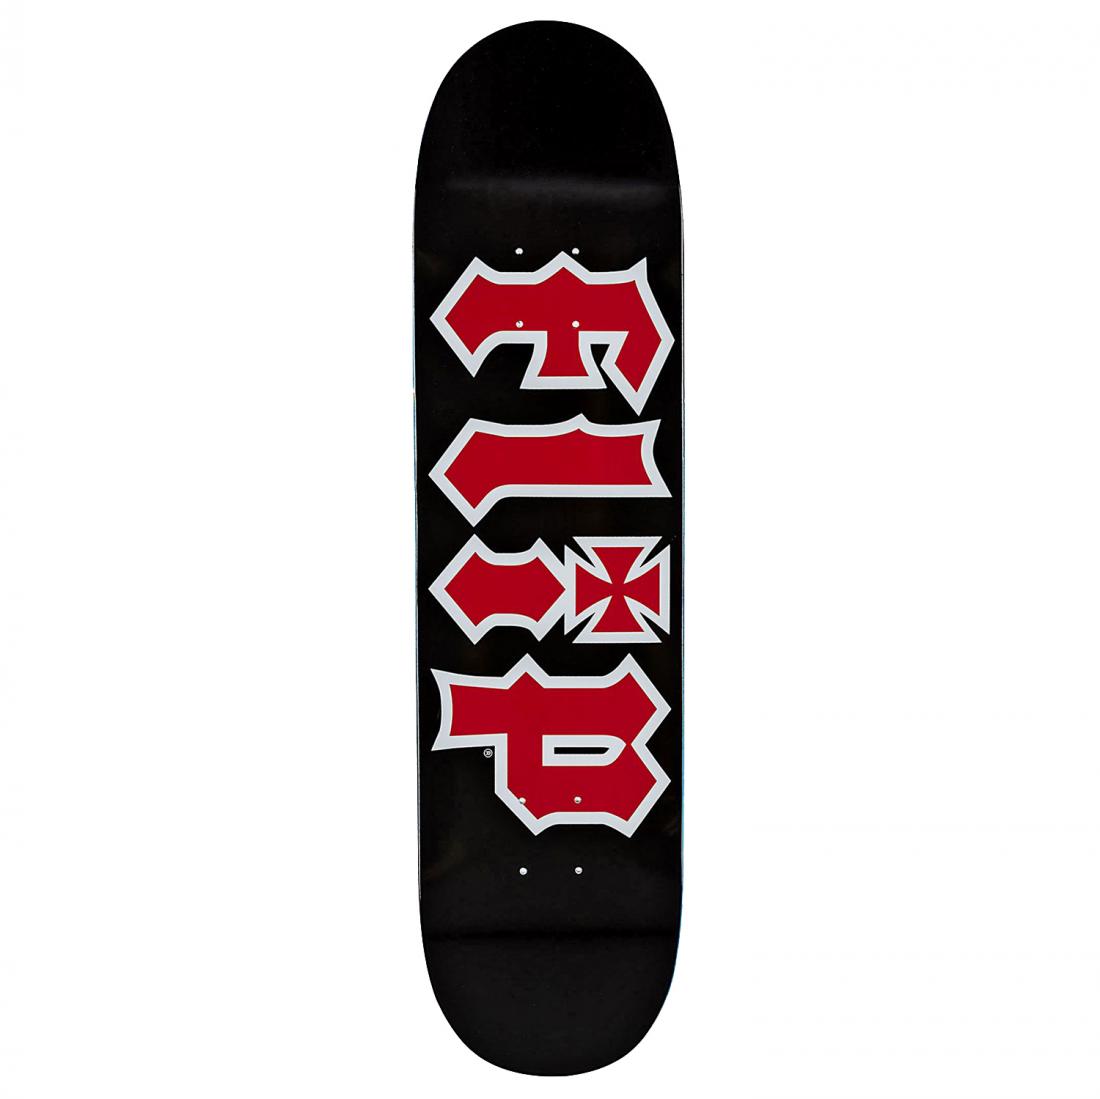 Дека скейтборд Flip Team Hkd Deck Flip, цвет черный 1, размер 8.0